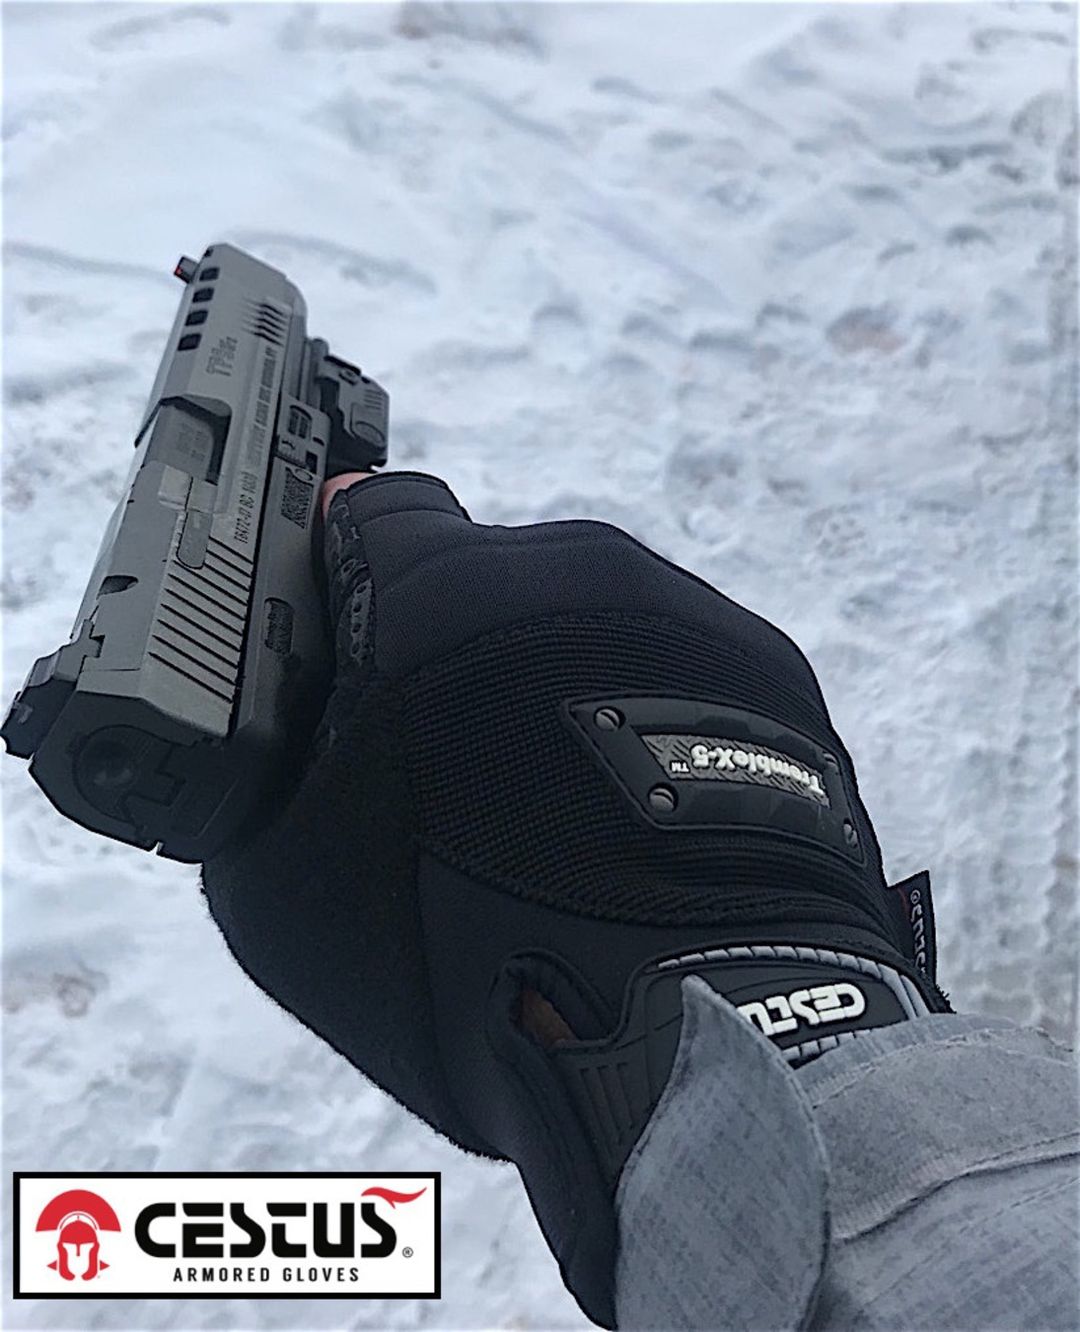 fingerless tactical gloves for shooting holding a handgun